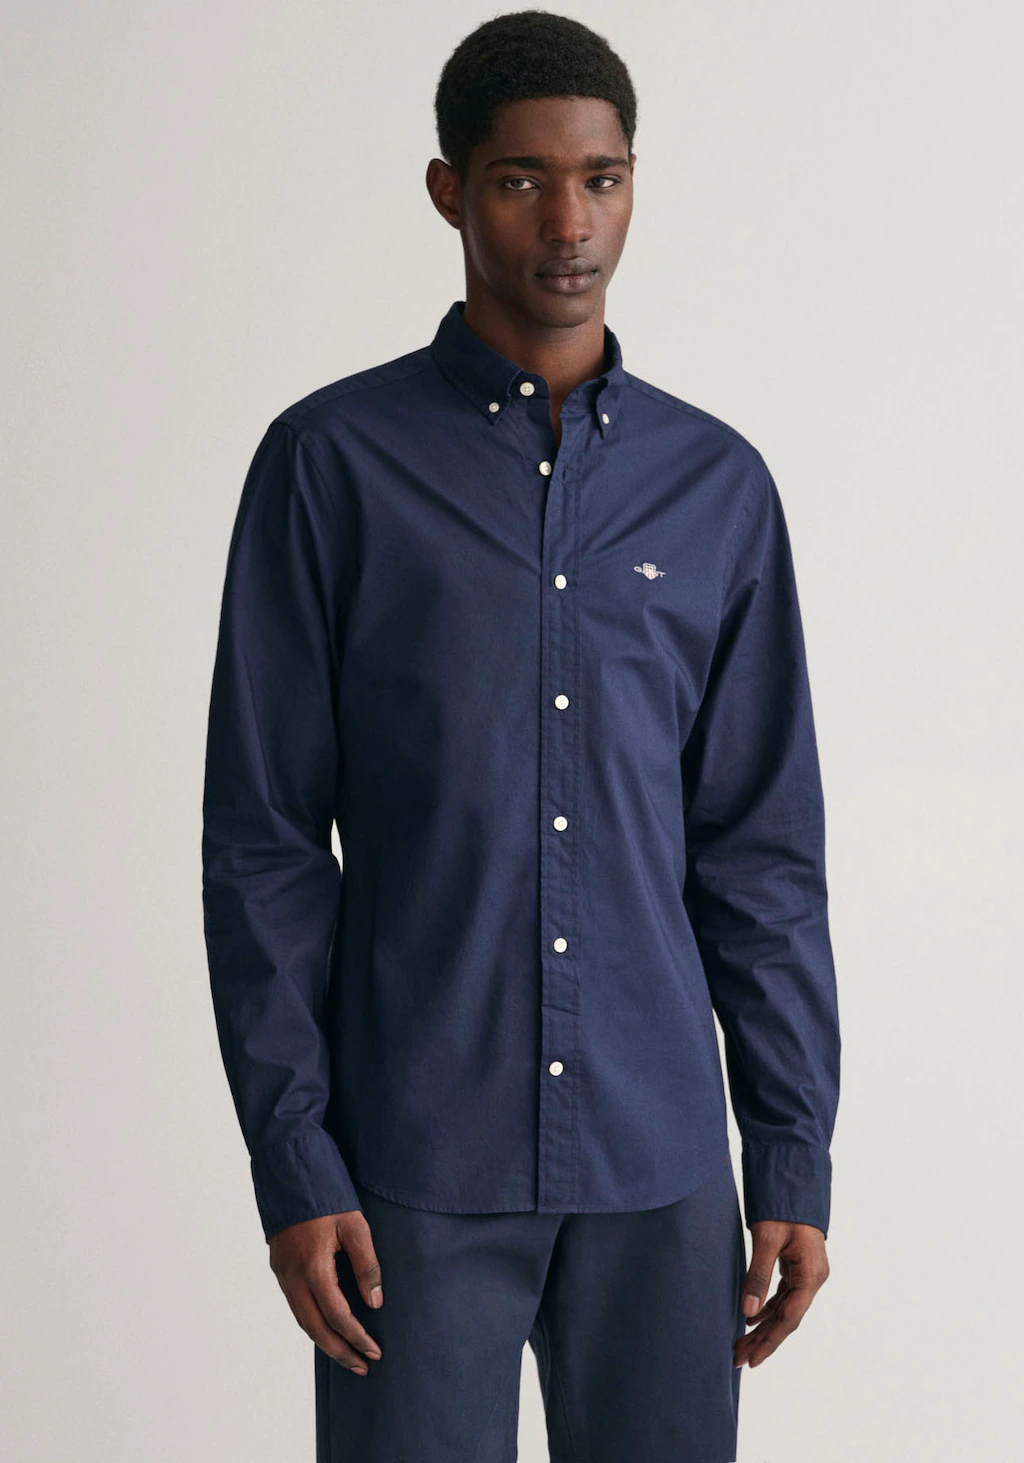 Gant Langarmhemd Slim Fit Popeline Hemd leichte Baumwolle strapazierfähig p günstig online kaufen